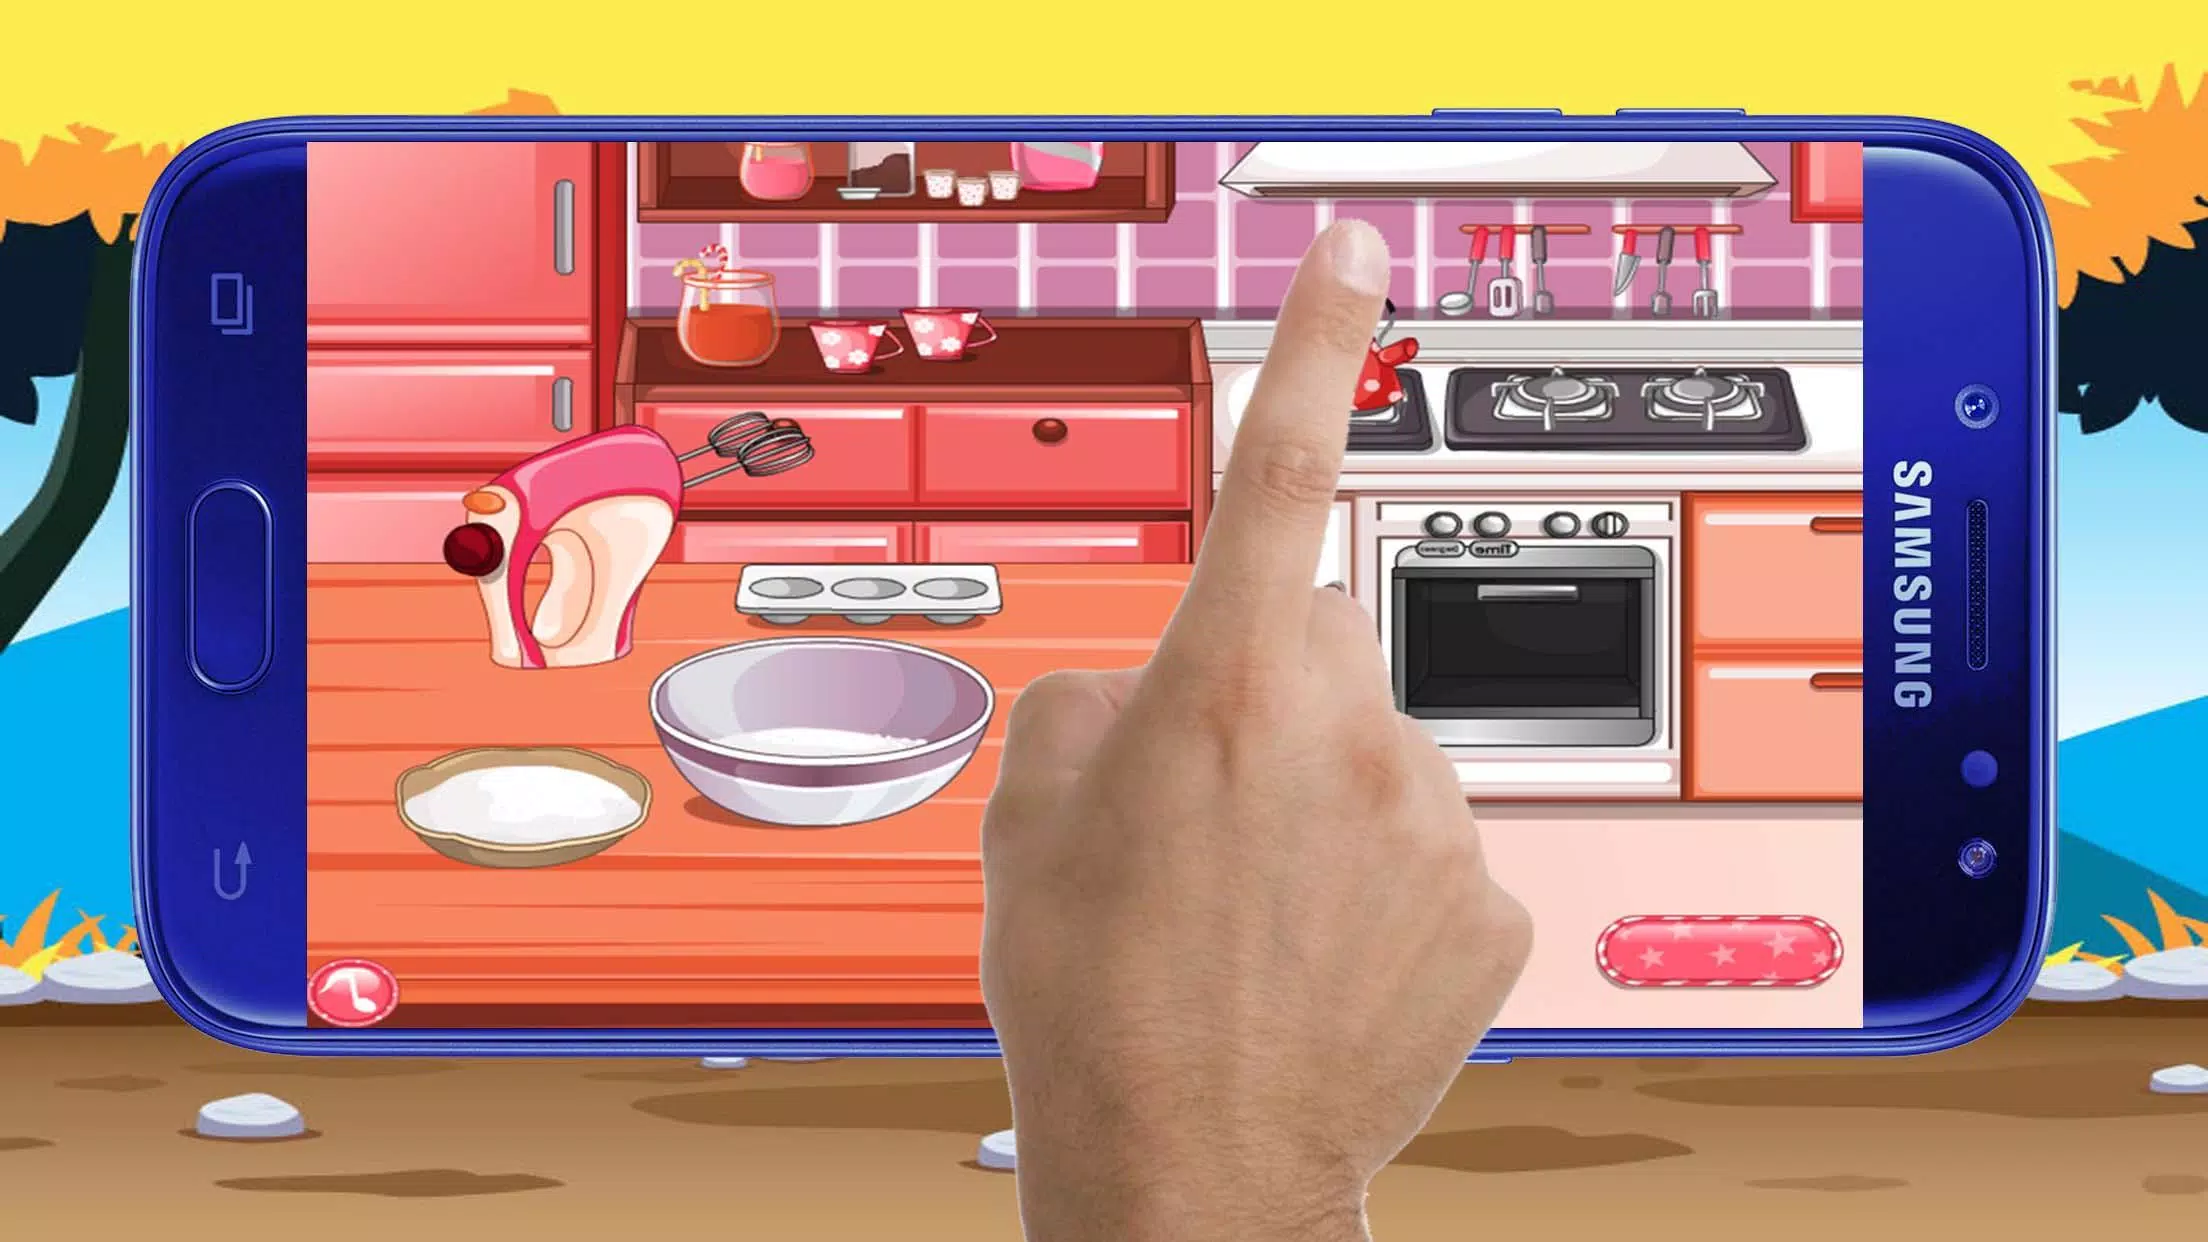 لعبة طبخ الحلويات اللذيذة -العاب طبخ سارة for Android - APK Download